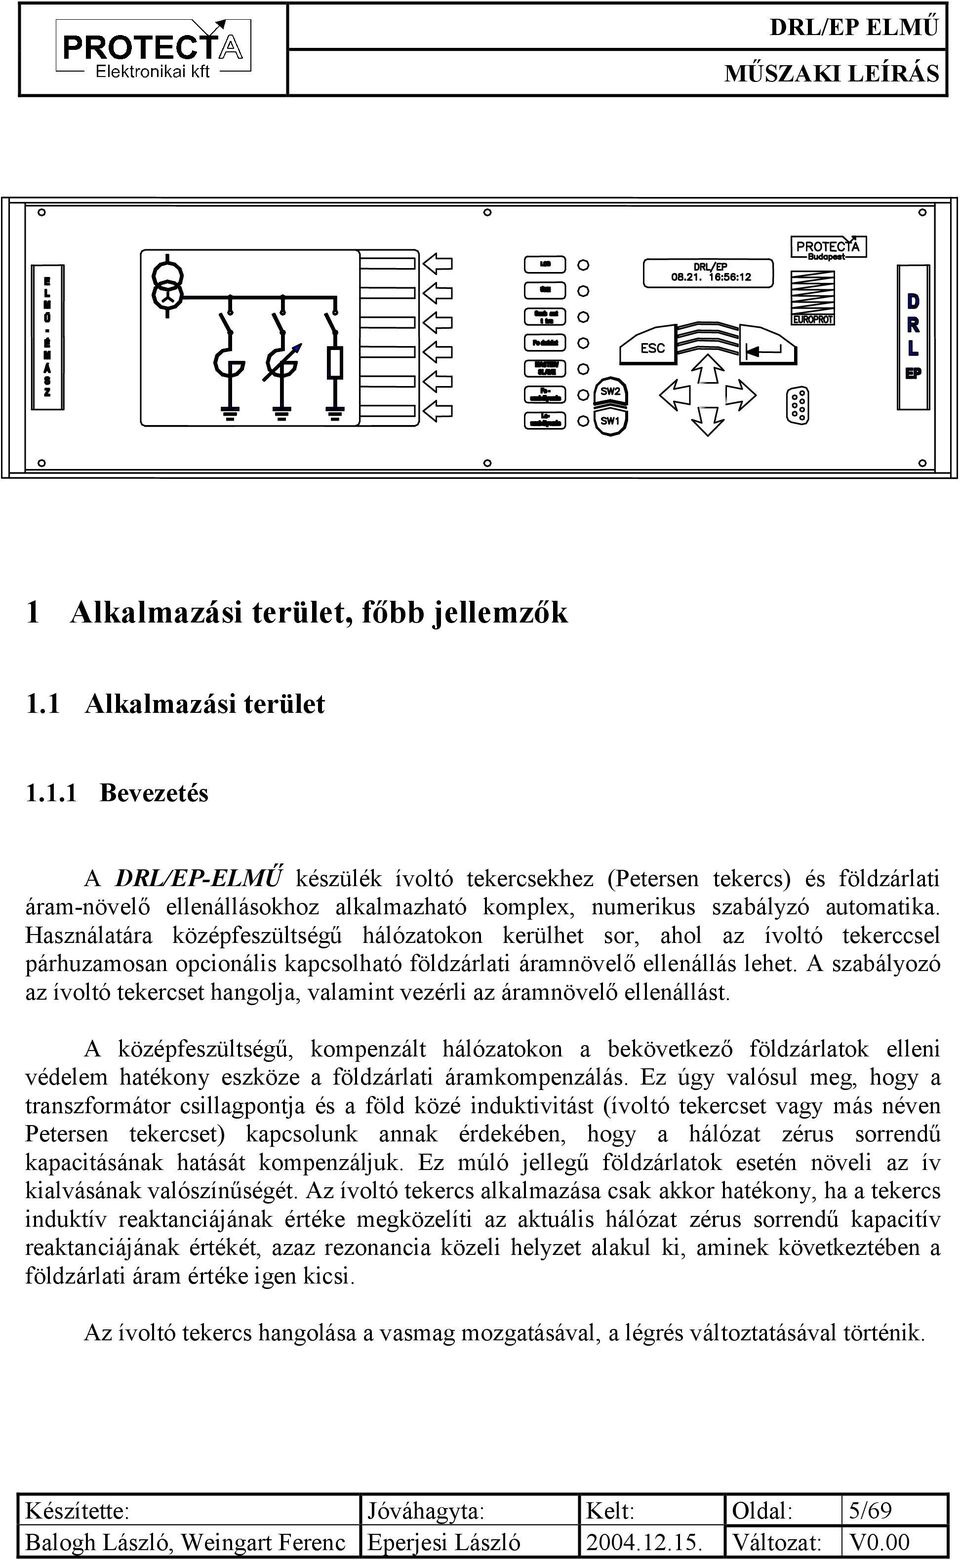 DRL/EP-ELMŰ. Digitális ívoltó tekercs és földzárlati áramnövelő ellenállás  szabályzó automatika. Műszaki leírás. Azonosító: FI - PDF Free Download